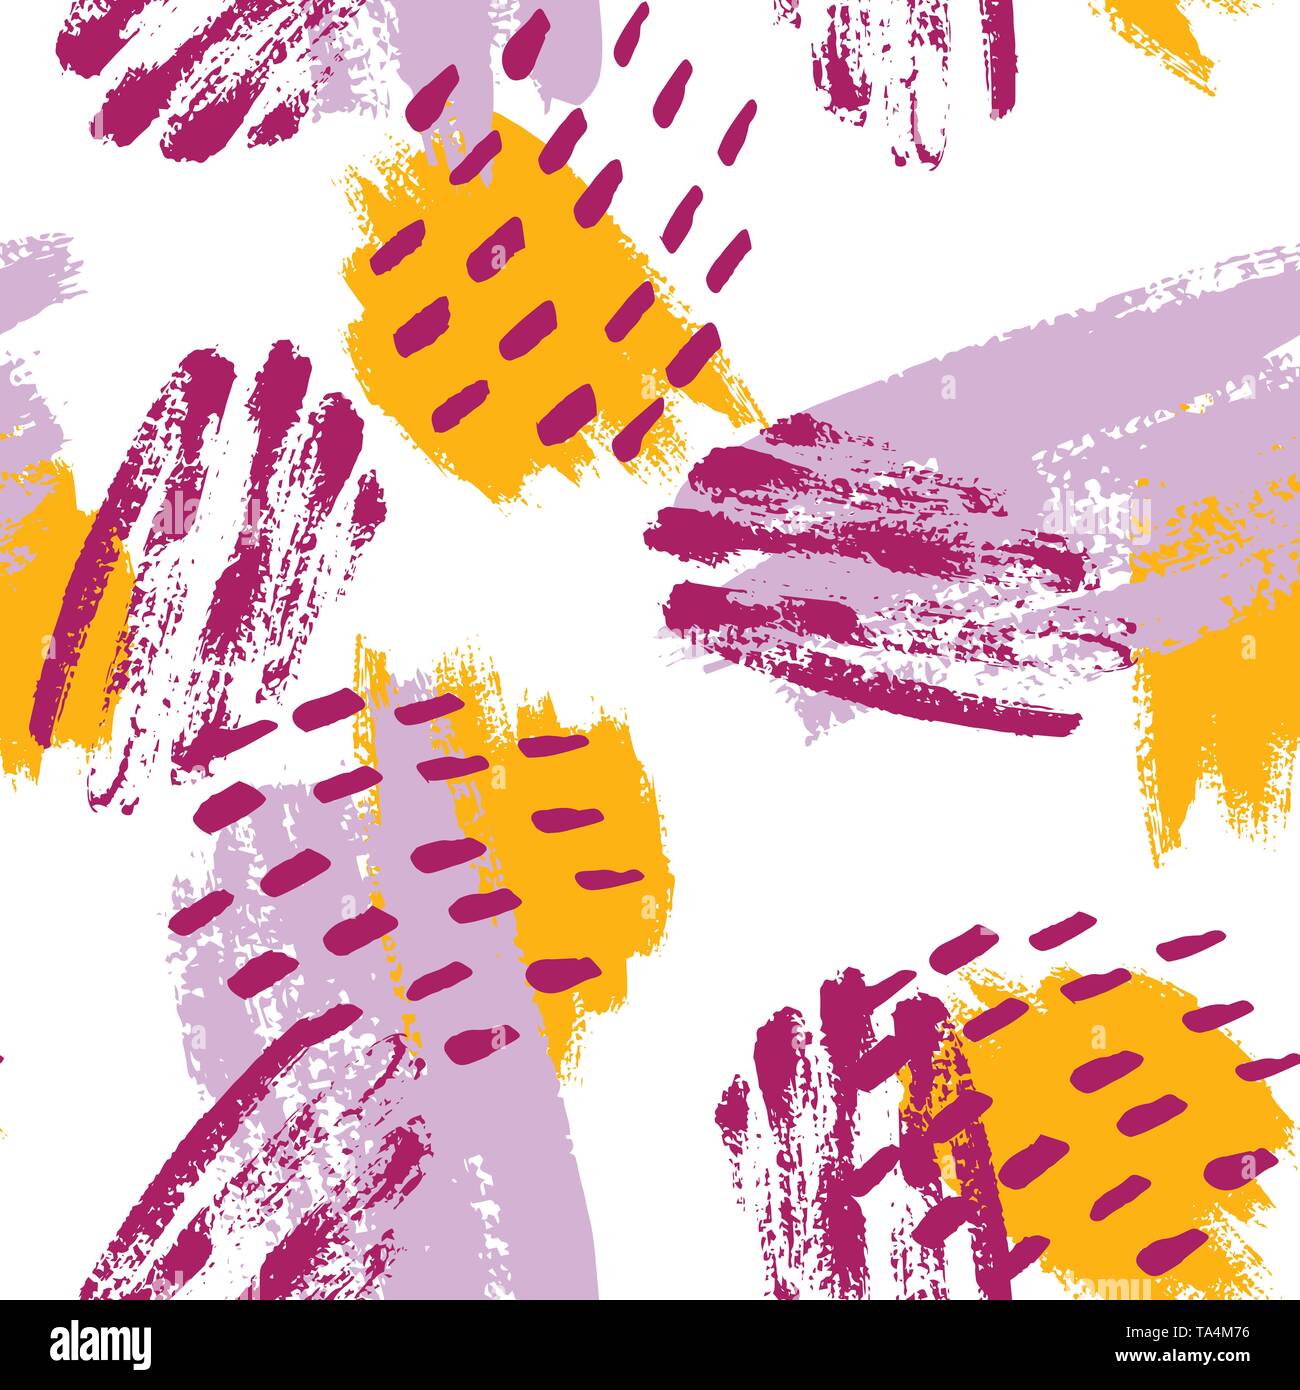 La main a peint les traits de pinceau dans la moutarde, violet, lilas et blanc. Seamless vector abstract pattern, l'arrière-plan de la texture les coups de pinceau et des taches, des points. Illustration de Vecteur